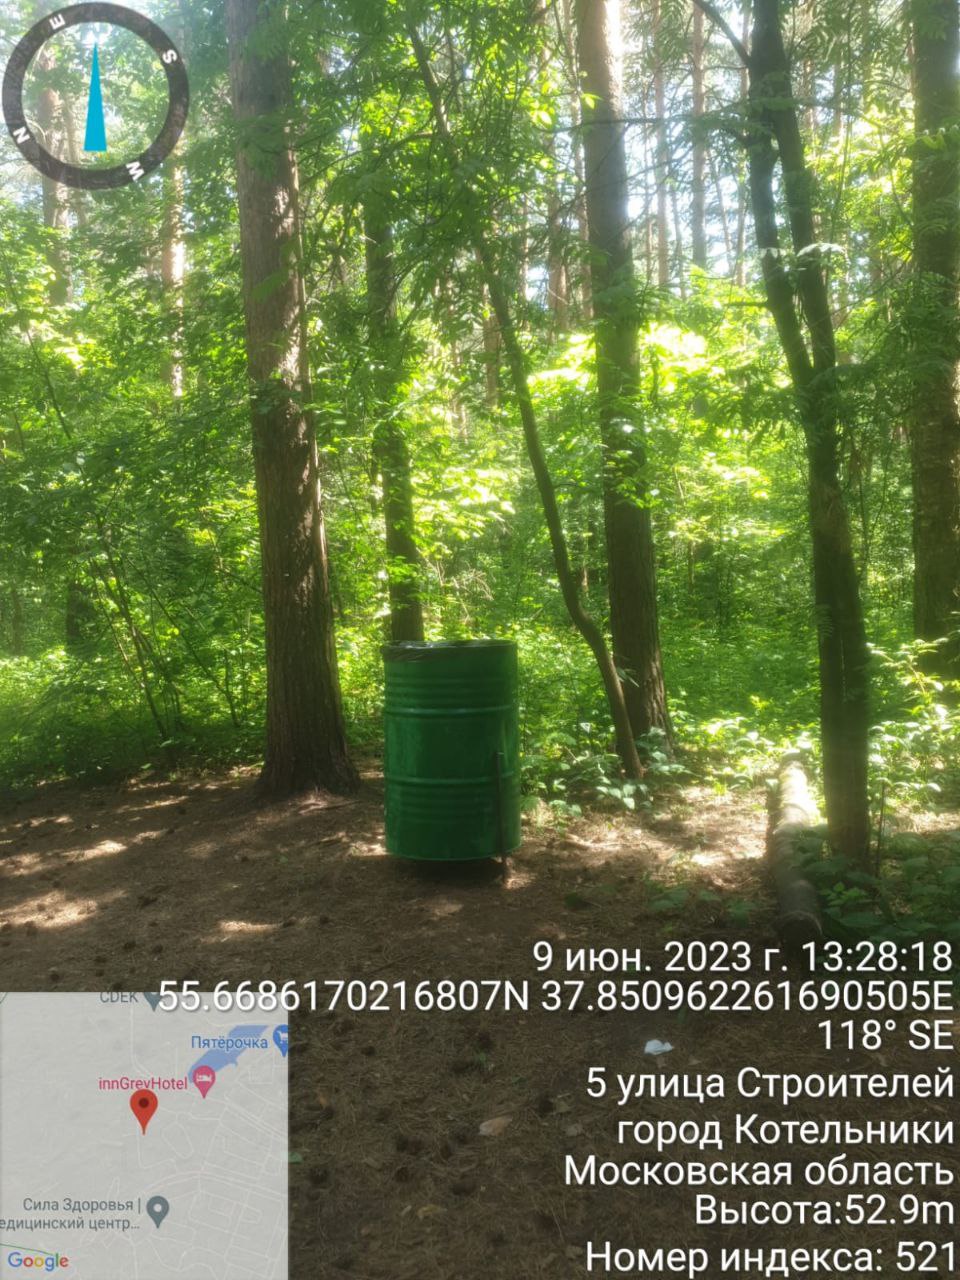 Установлены новые мусорные баки в Кузьминском и Томилинском лесопарке